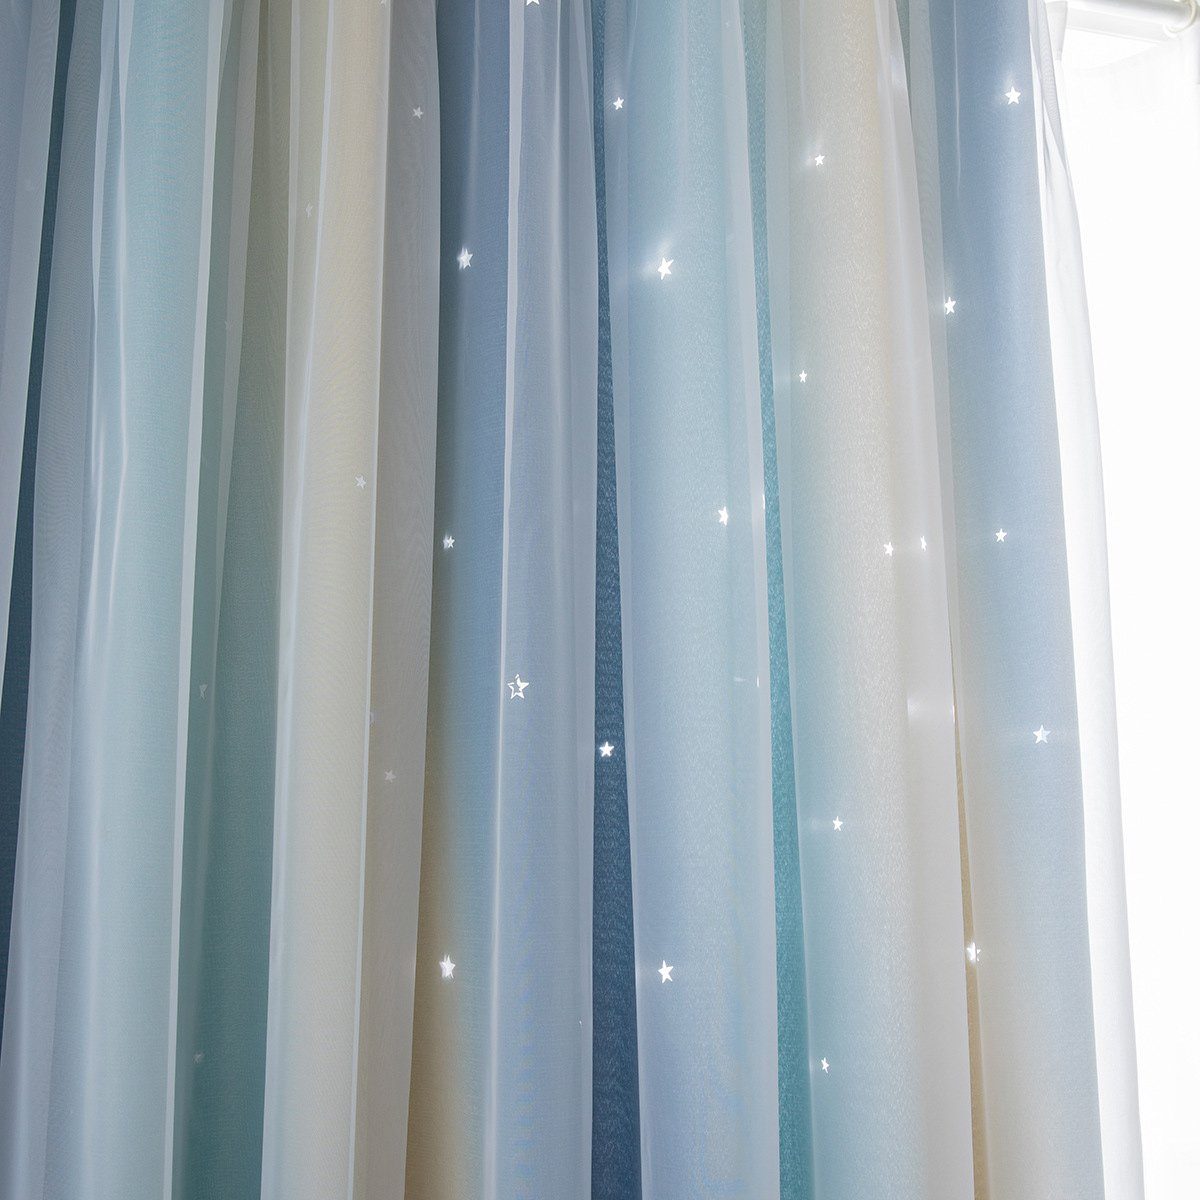 Juoungle, auf Mädchenzimmer-Vorhänge, Sterne Wandvorhänge, St), sehen den Die Vorhang hohlen für blau (1 bunten Vorhänge Kinderzimmer, Verdunkelungsvorhängen